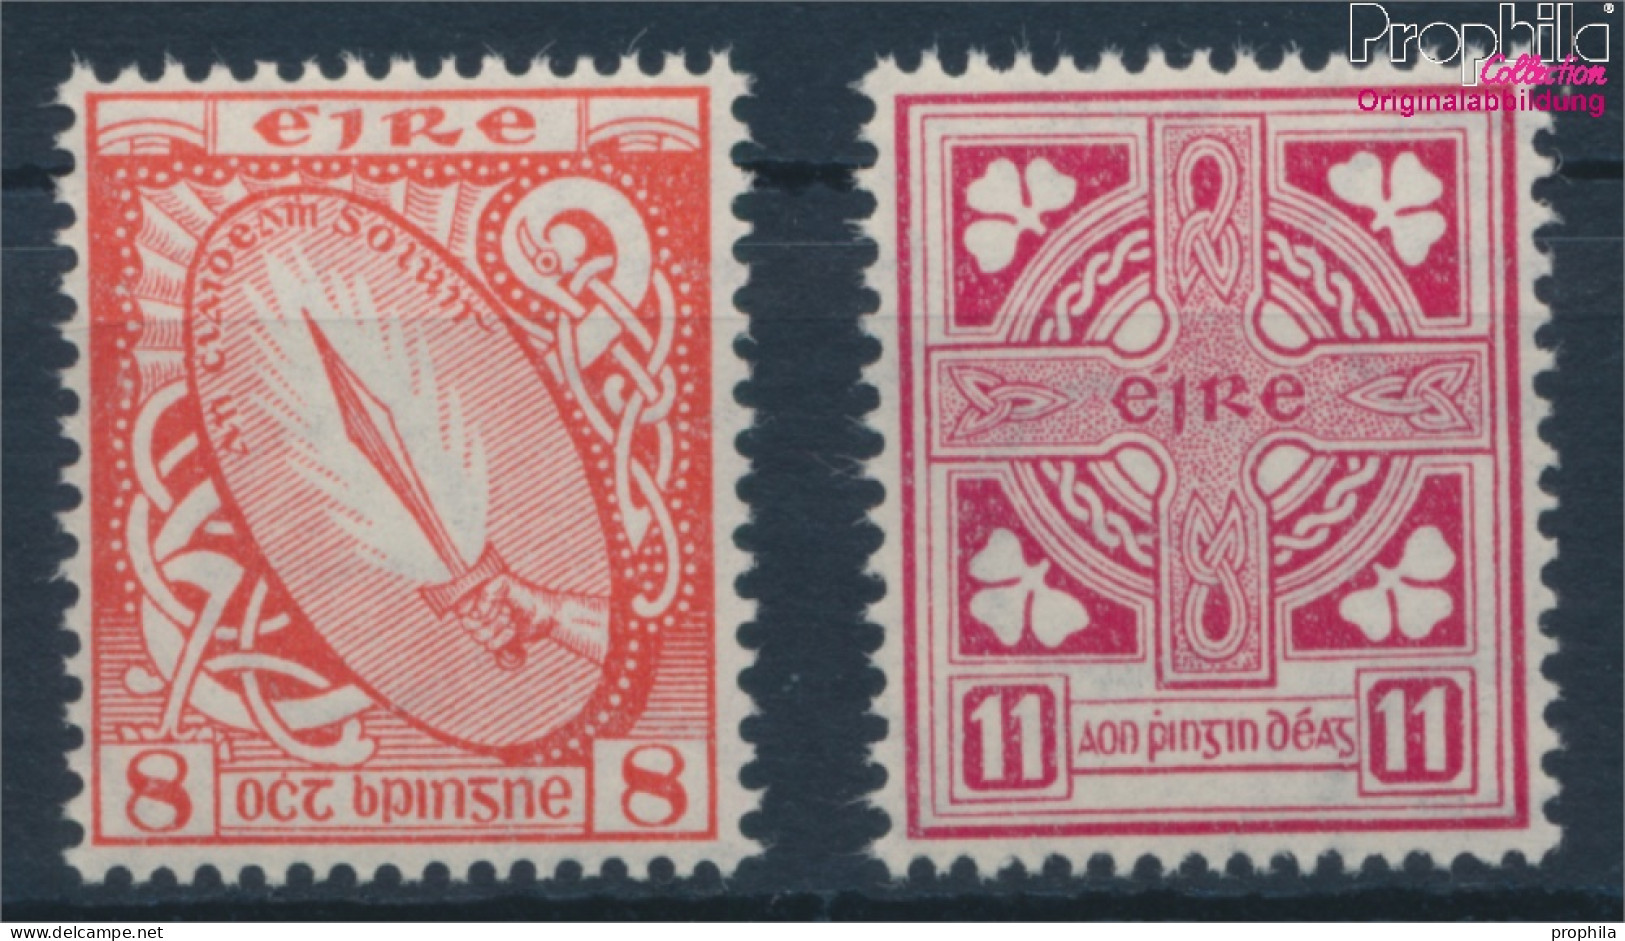 Irland 106-107 (kompl.Ausg.) Postfrisch 1948 Symbole (10398339 - Nuevos